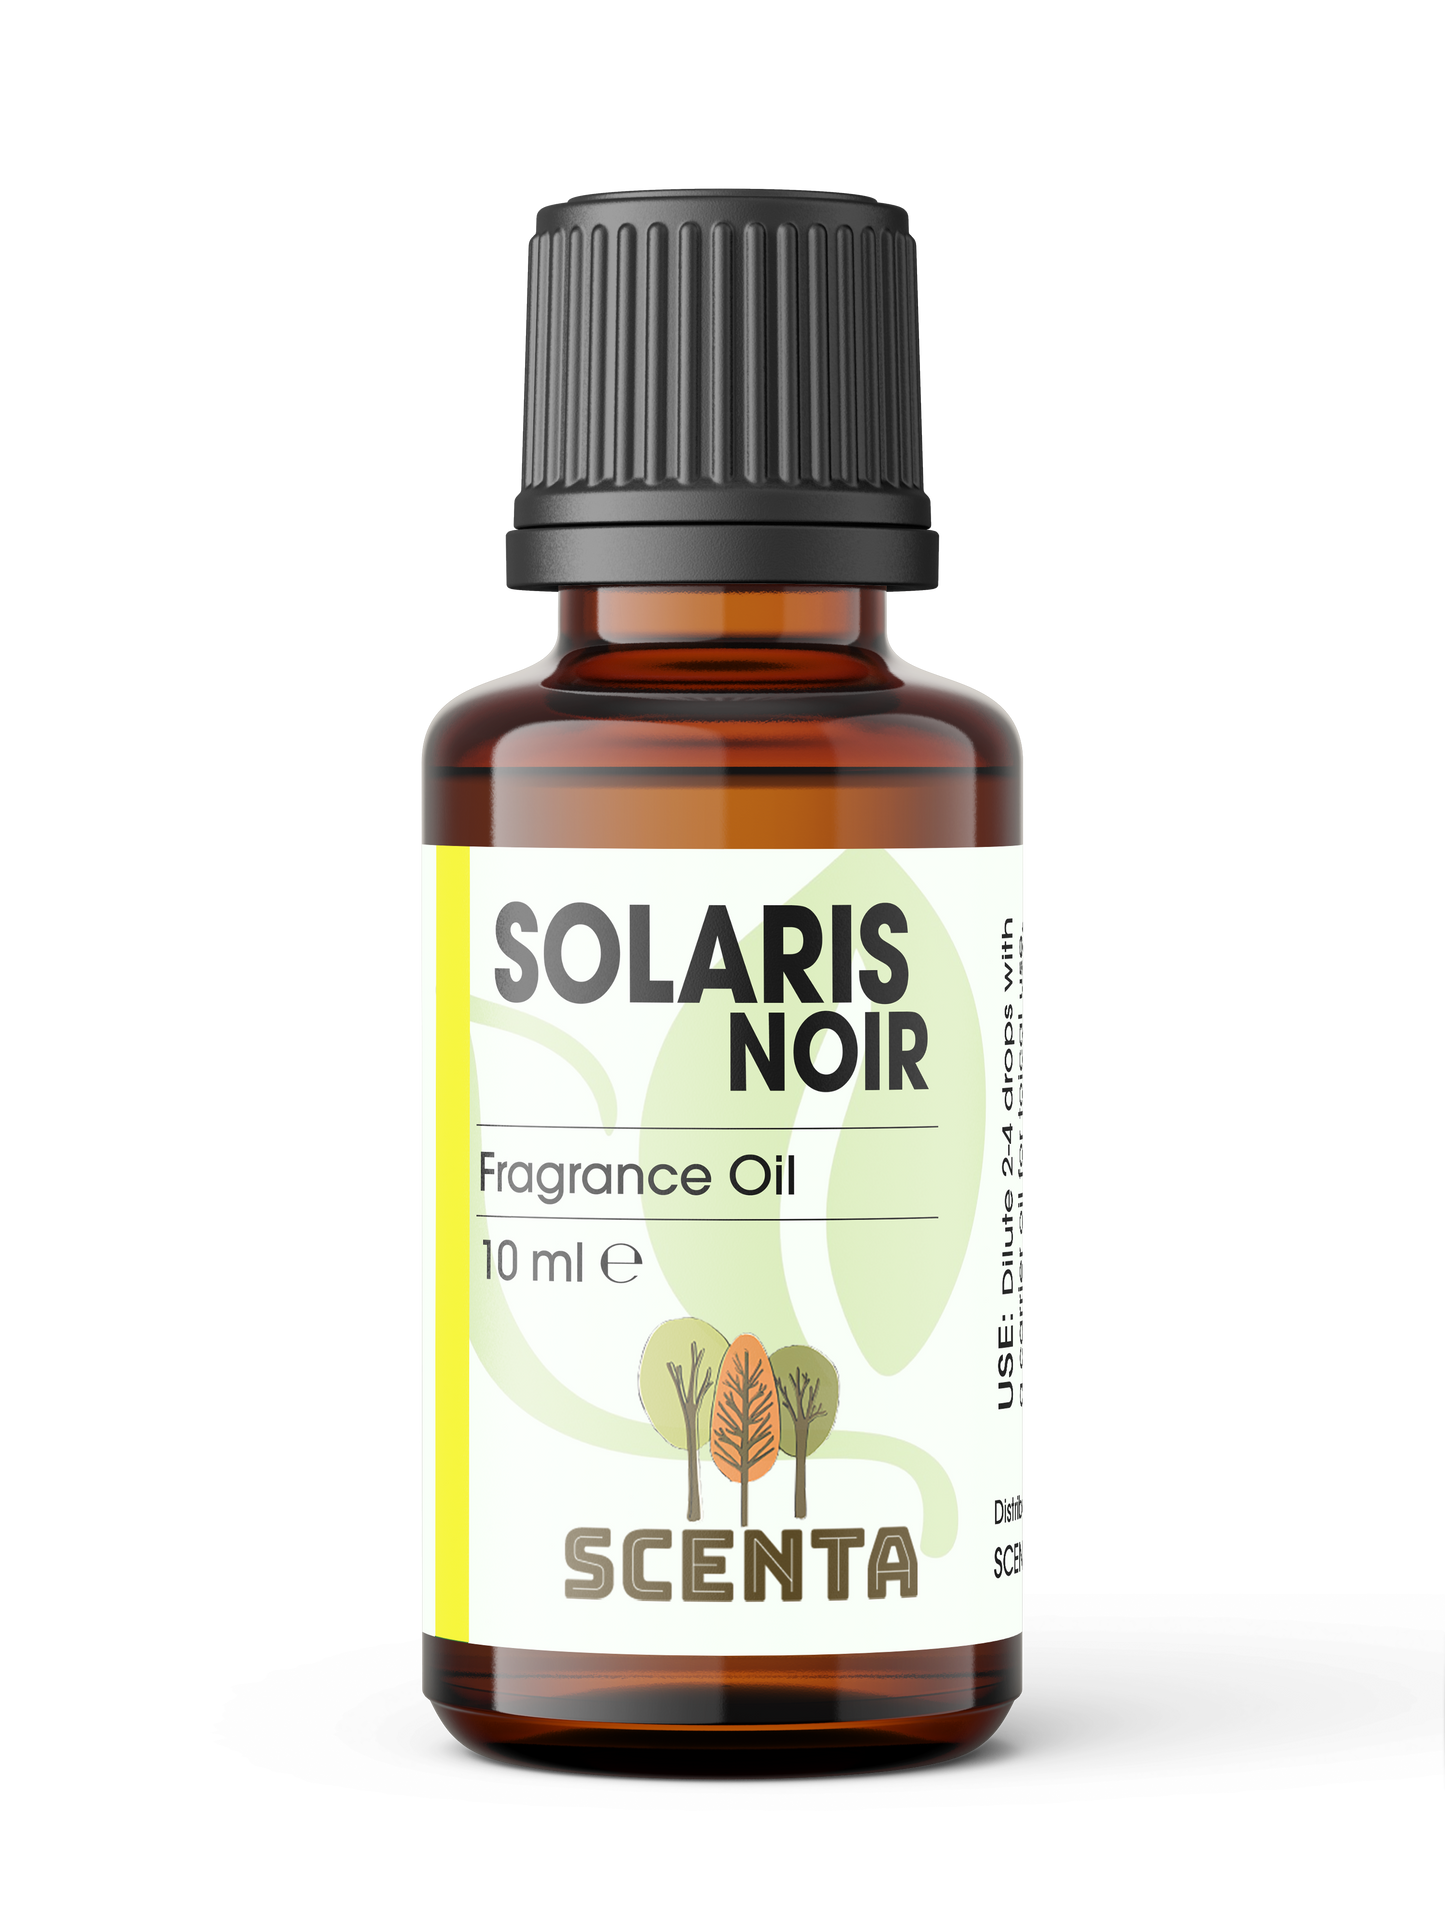 Solaris Noir Fragrance Oil 10ml